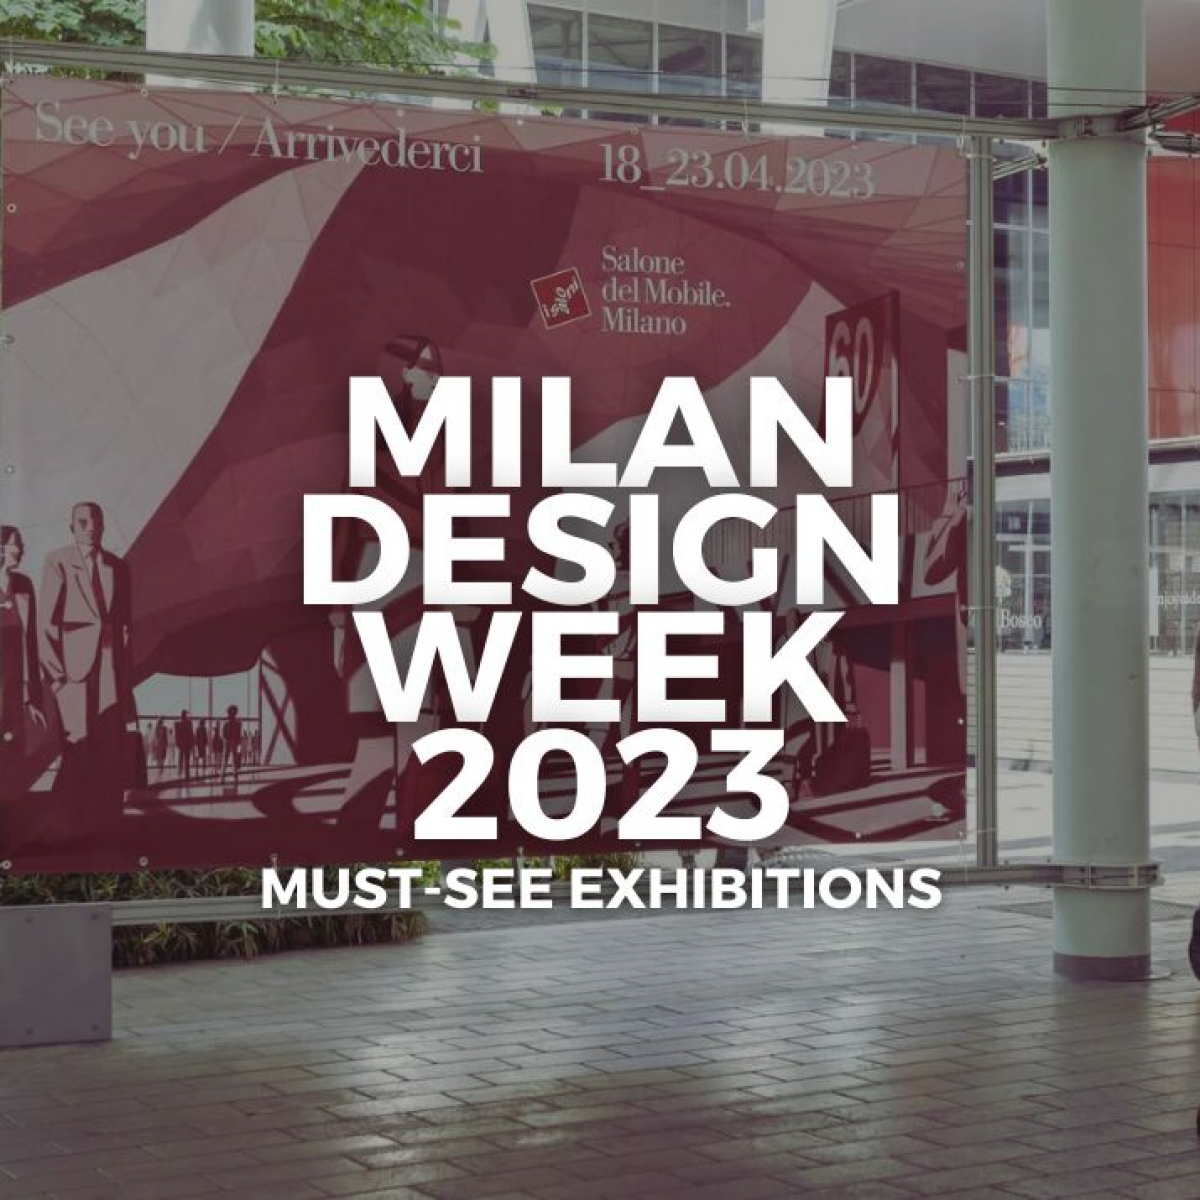 Milan Design Week 2022 showcases sensory design